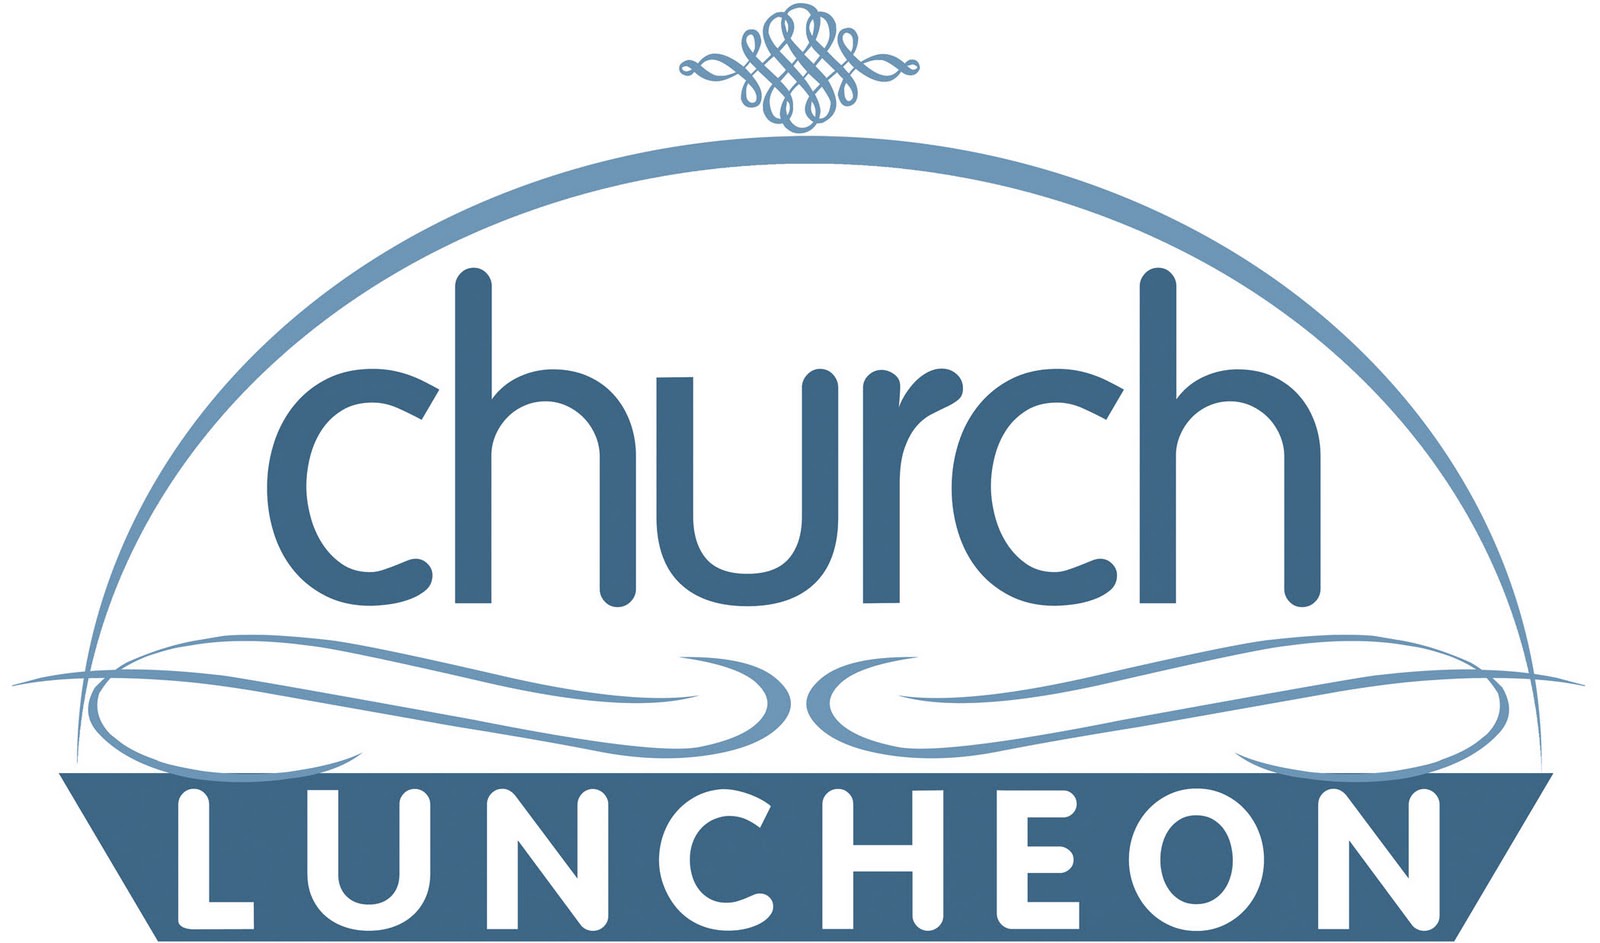 Church Luncheon Clipart.